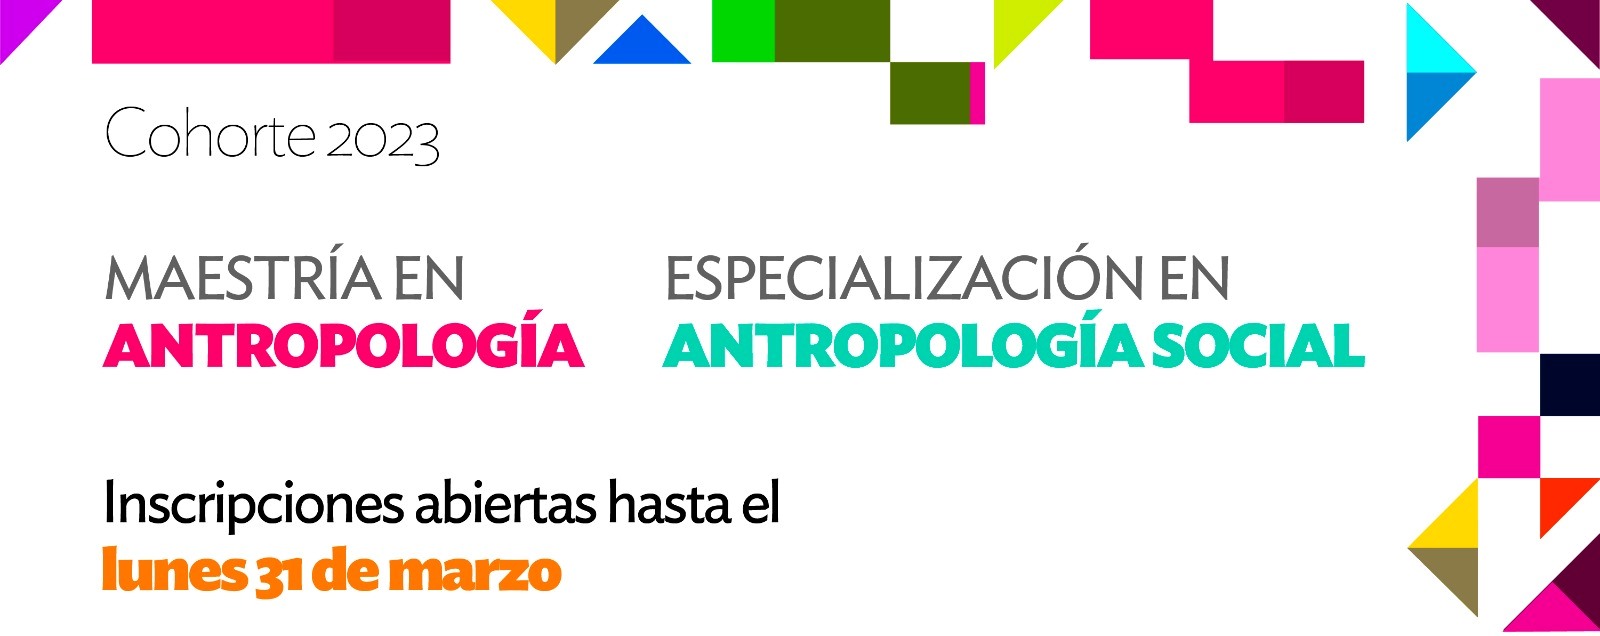 Abre la cohorte 2023 de la Especialización en Antropología Social y la Maestría en Antropología